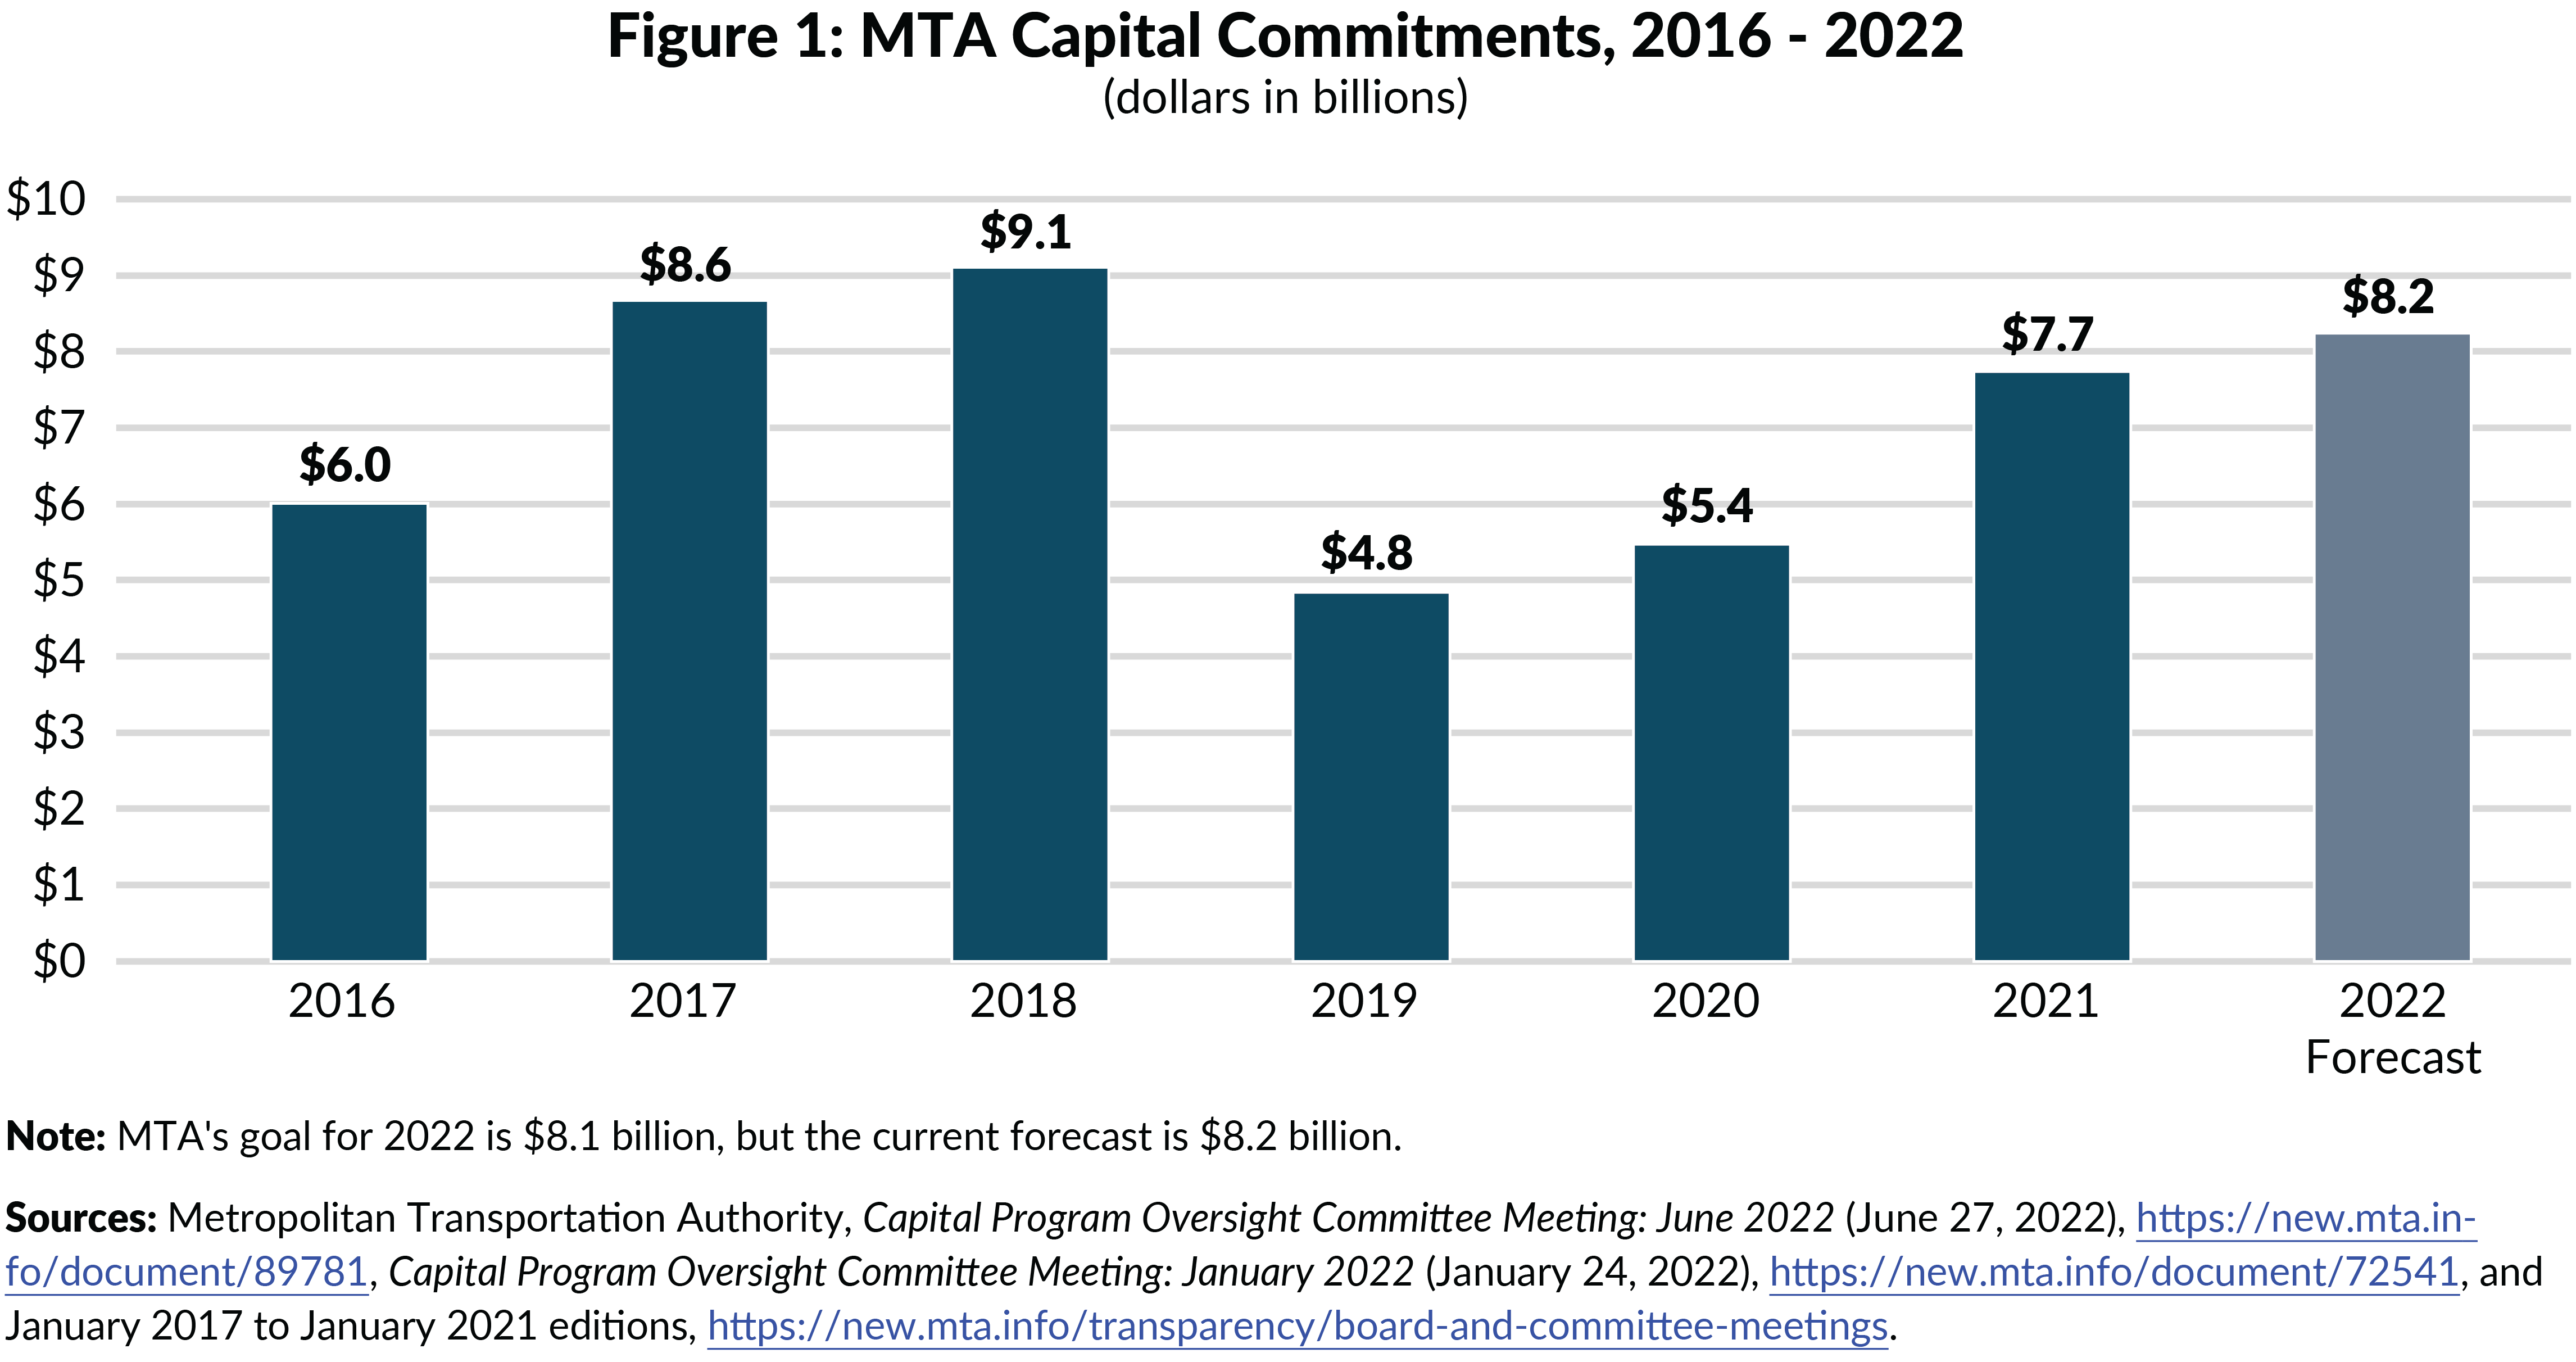 Figure 1: MTA Capital Commitments, 2016 - 2022